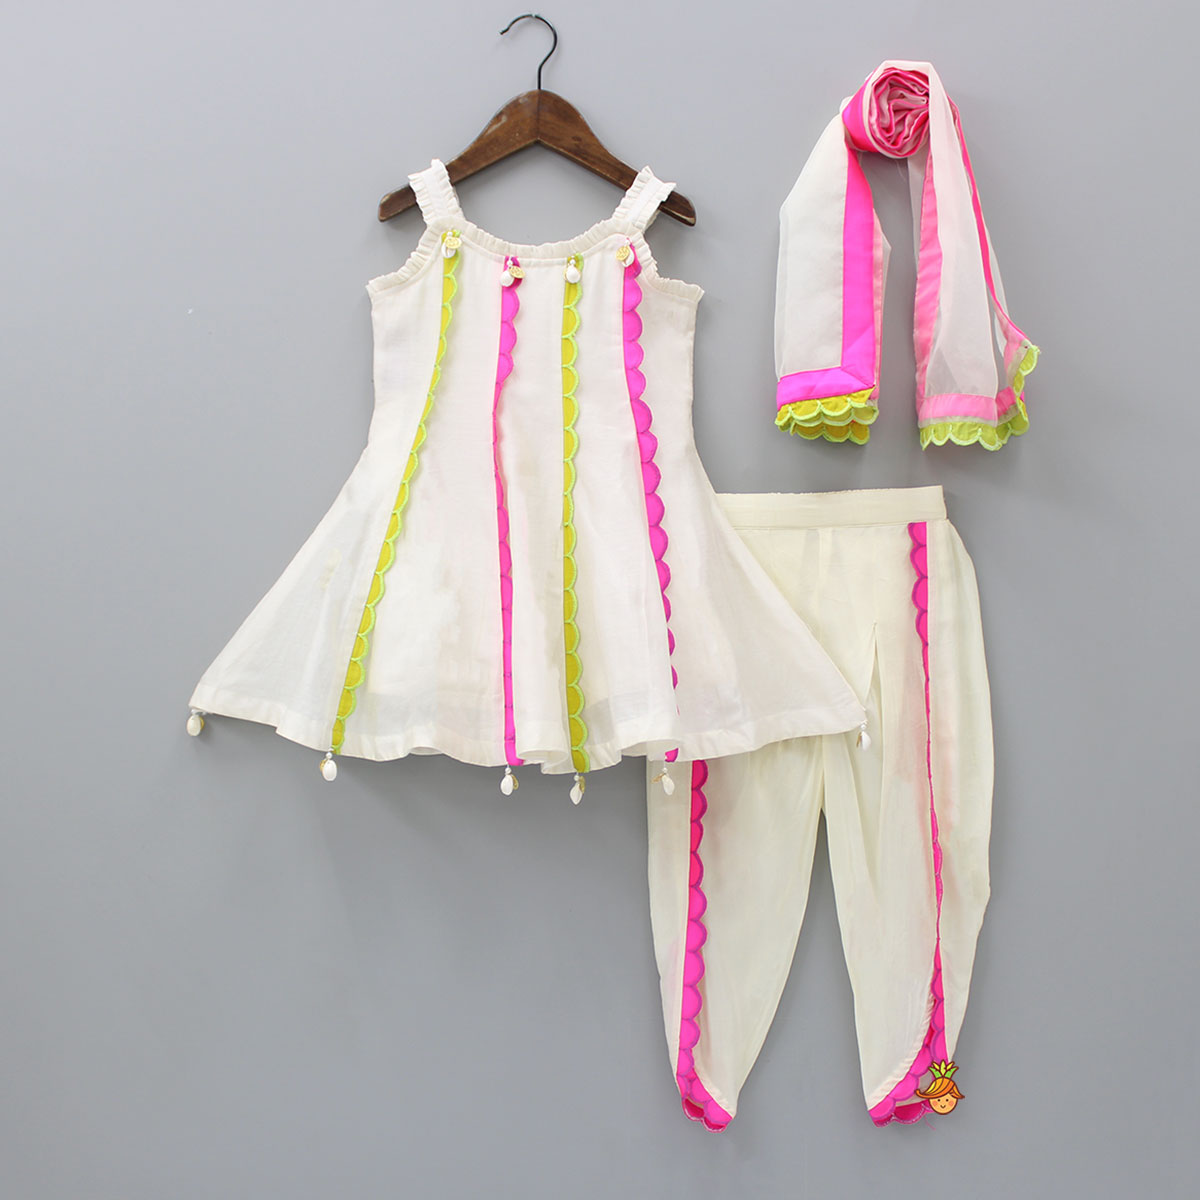 Wholesale Stylish Casual Wear Printed Cotton Short Kurti With Dhoti | Kurti  Supplier | Stylish dress designs, Stylish dresses for girls, Kurti designs  latest